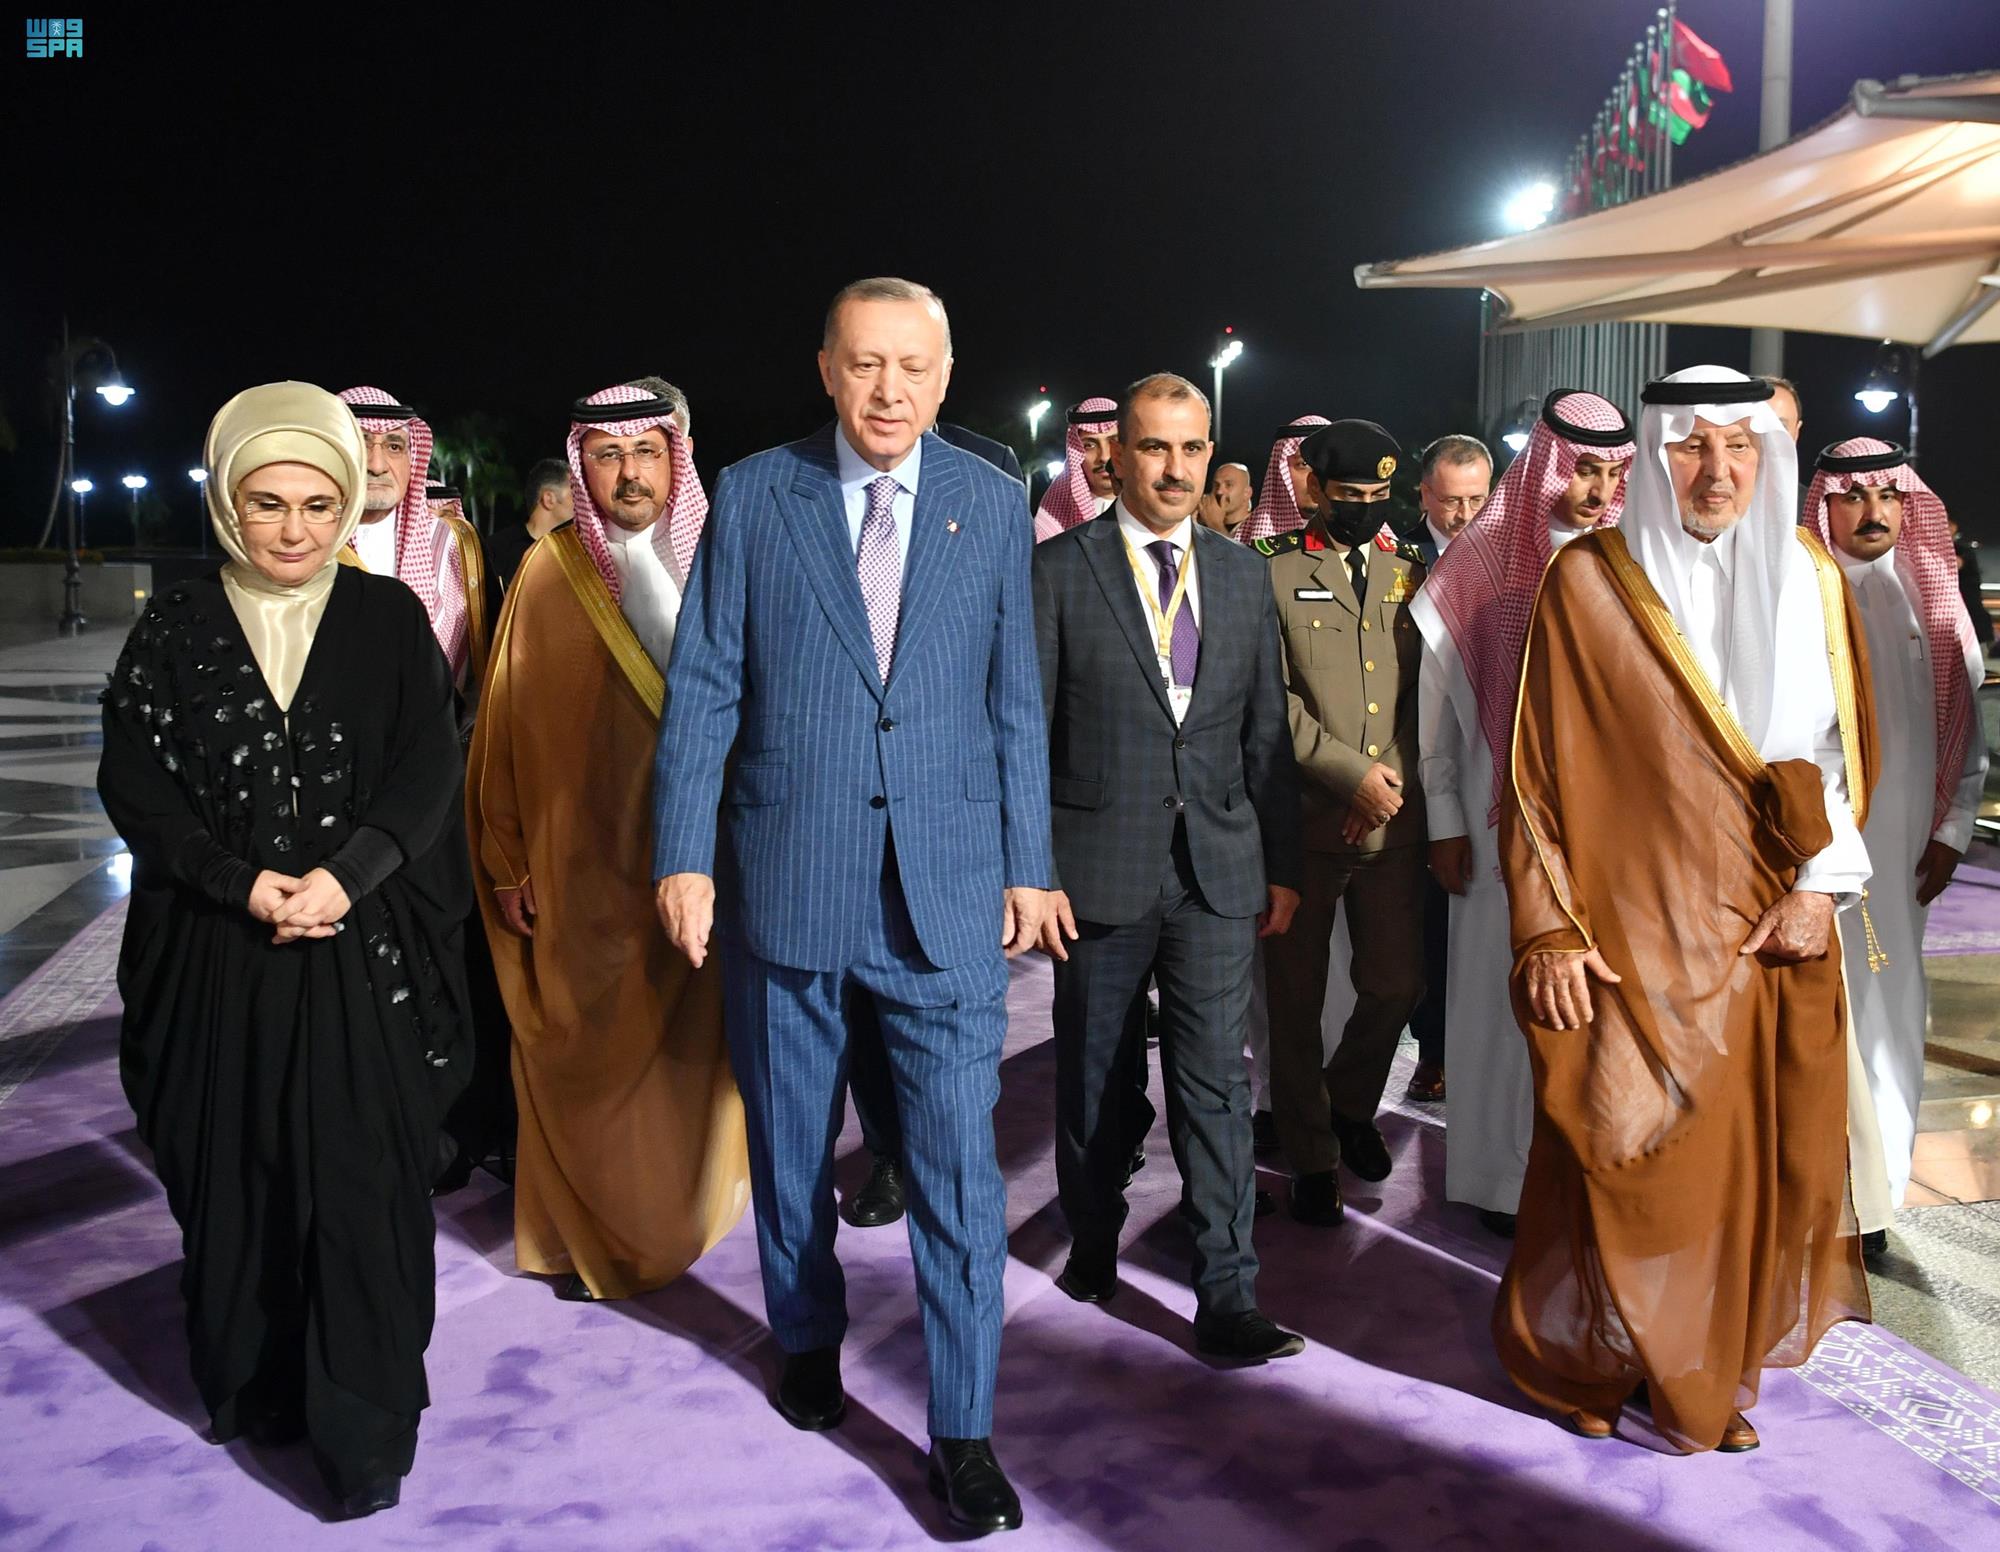 شاهد: لحظة وصول الرئيس أردوغان إلى السعودية واستقباله من قبل مستشار الملك سلمان